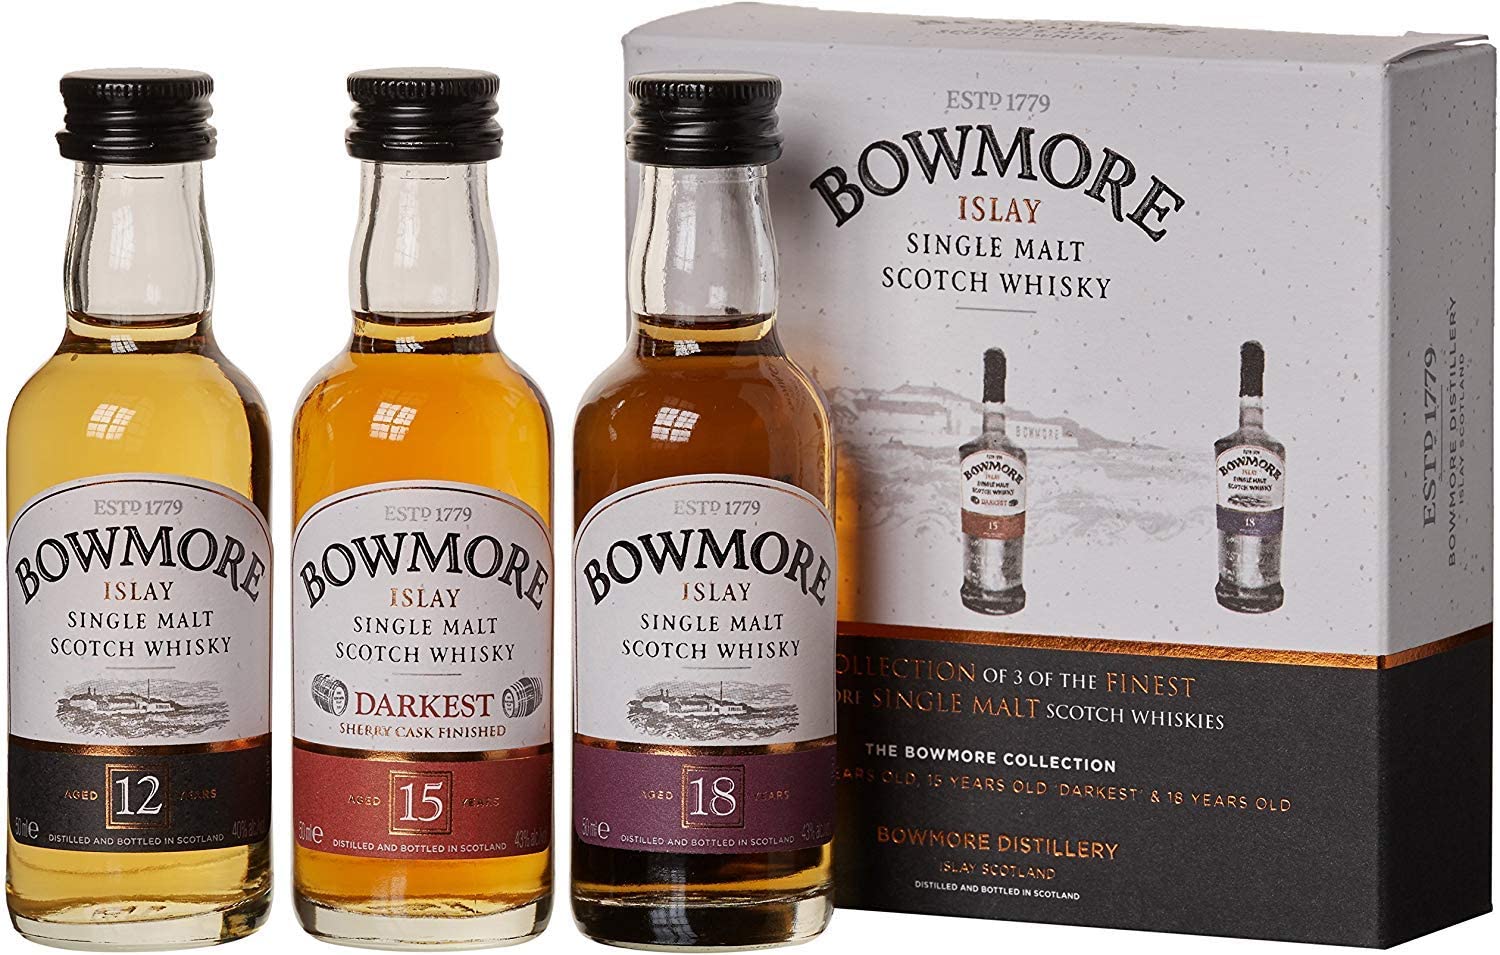 Acheter le whisky Bowmore à un bon prix 